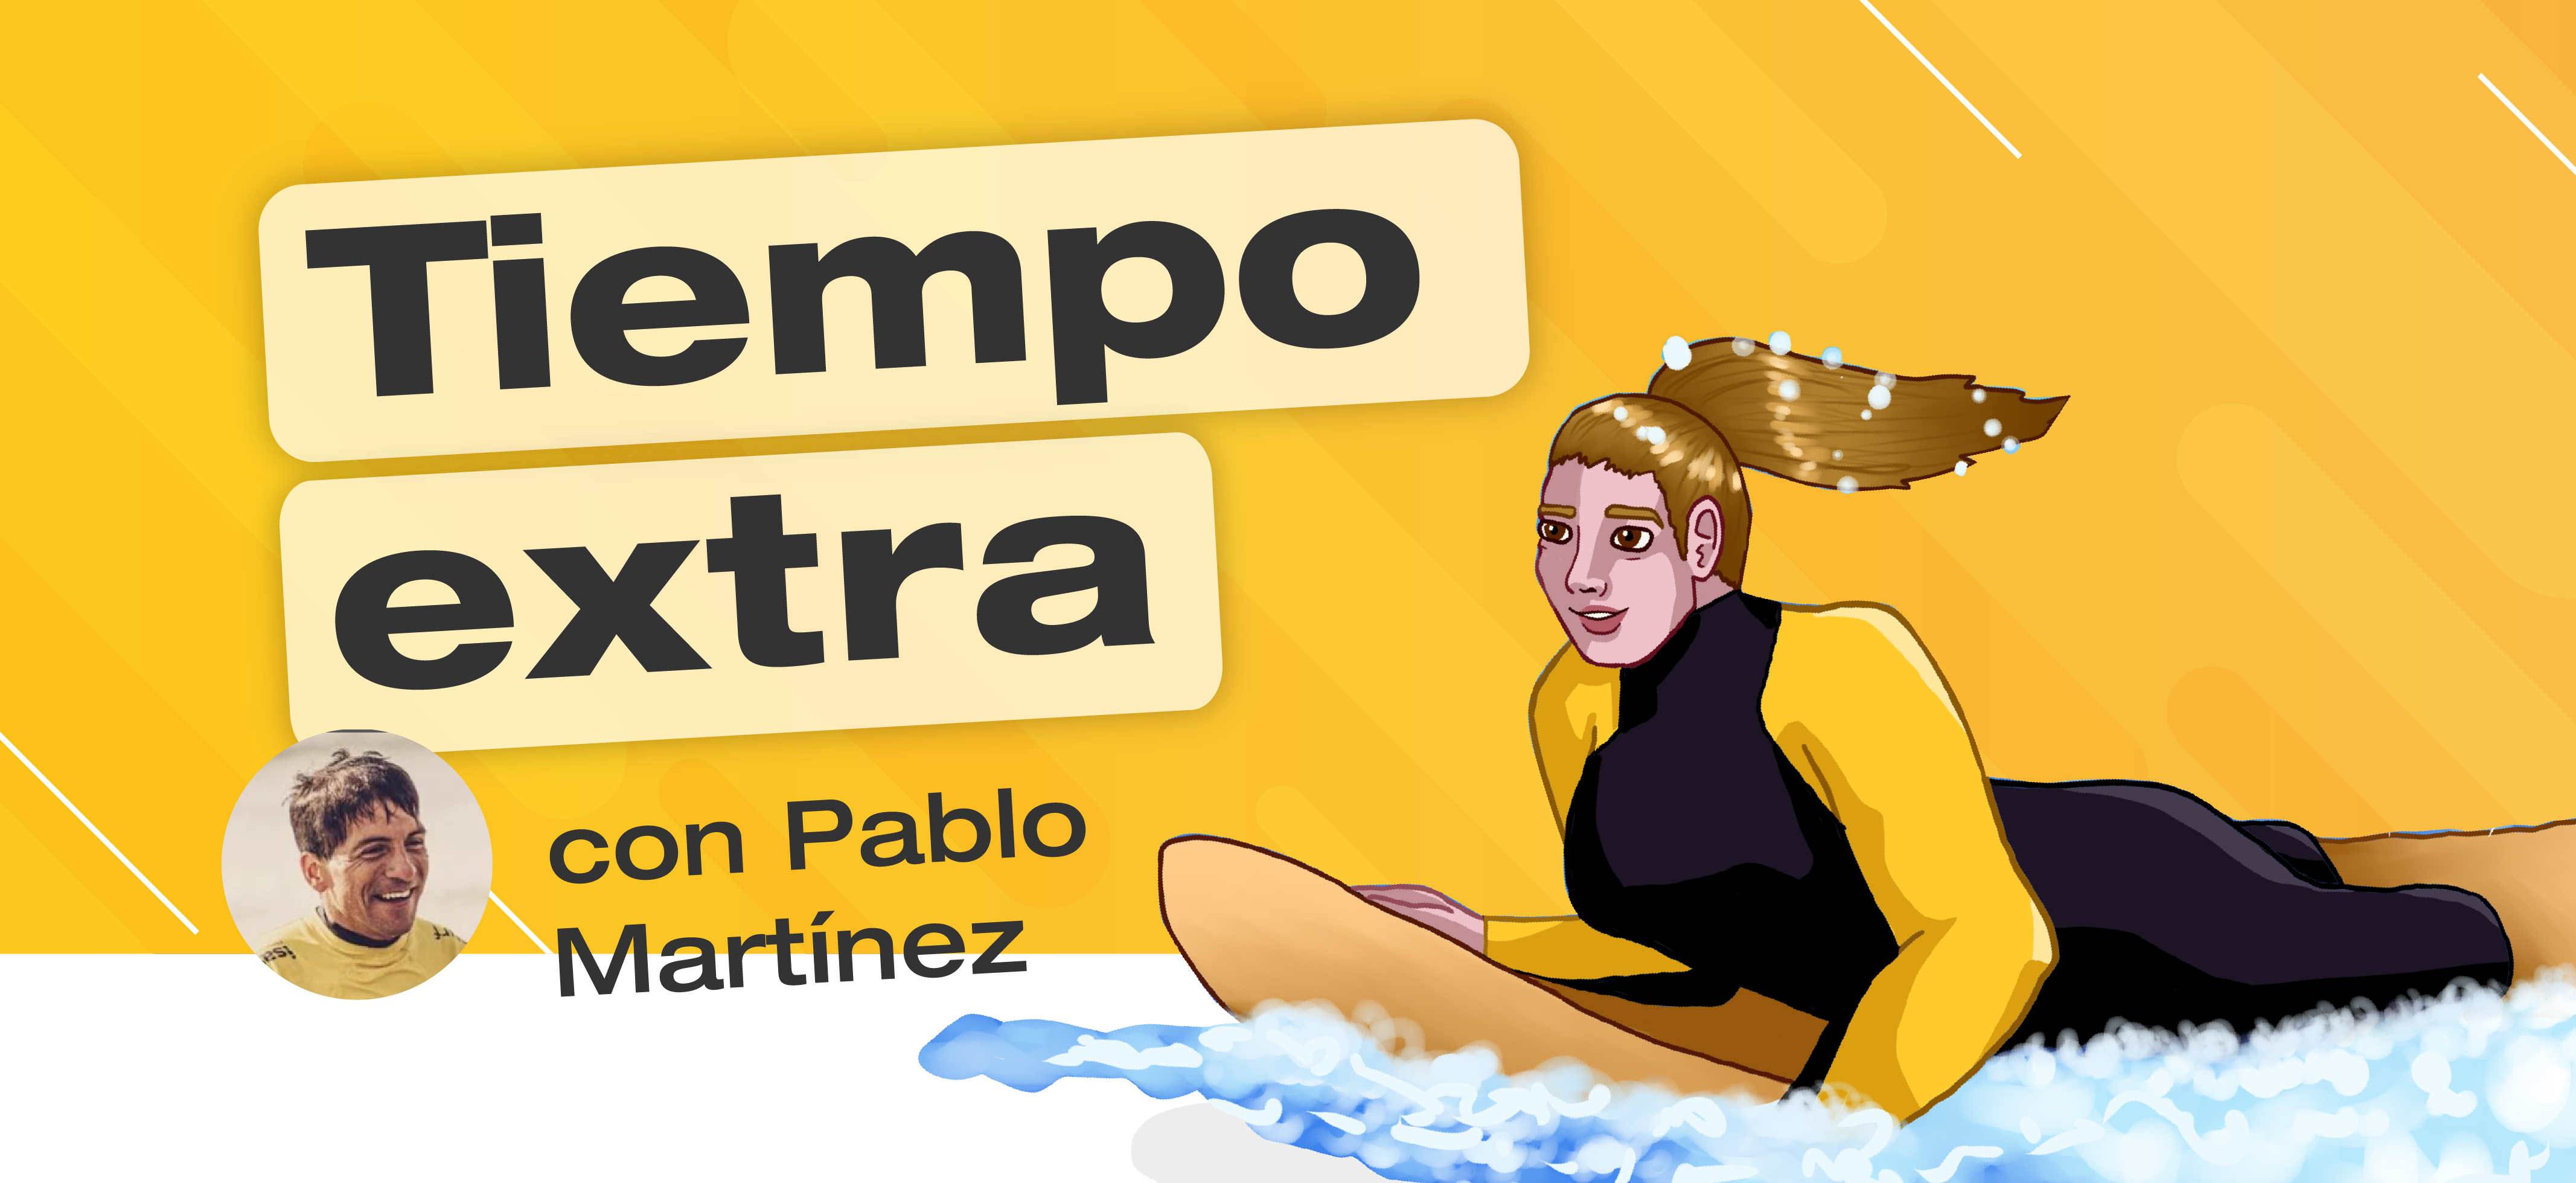 Imagen con fondo amarillo y el título: Tiempo extra. Debajo se ubica una foto miniatura de Pablo Martínez y su nombre. En el margen derecho, una ilustración de una mujer haciendo surf.